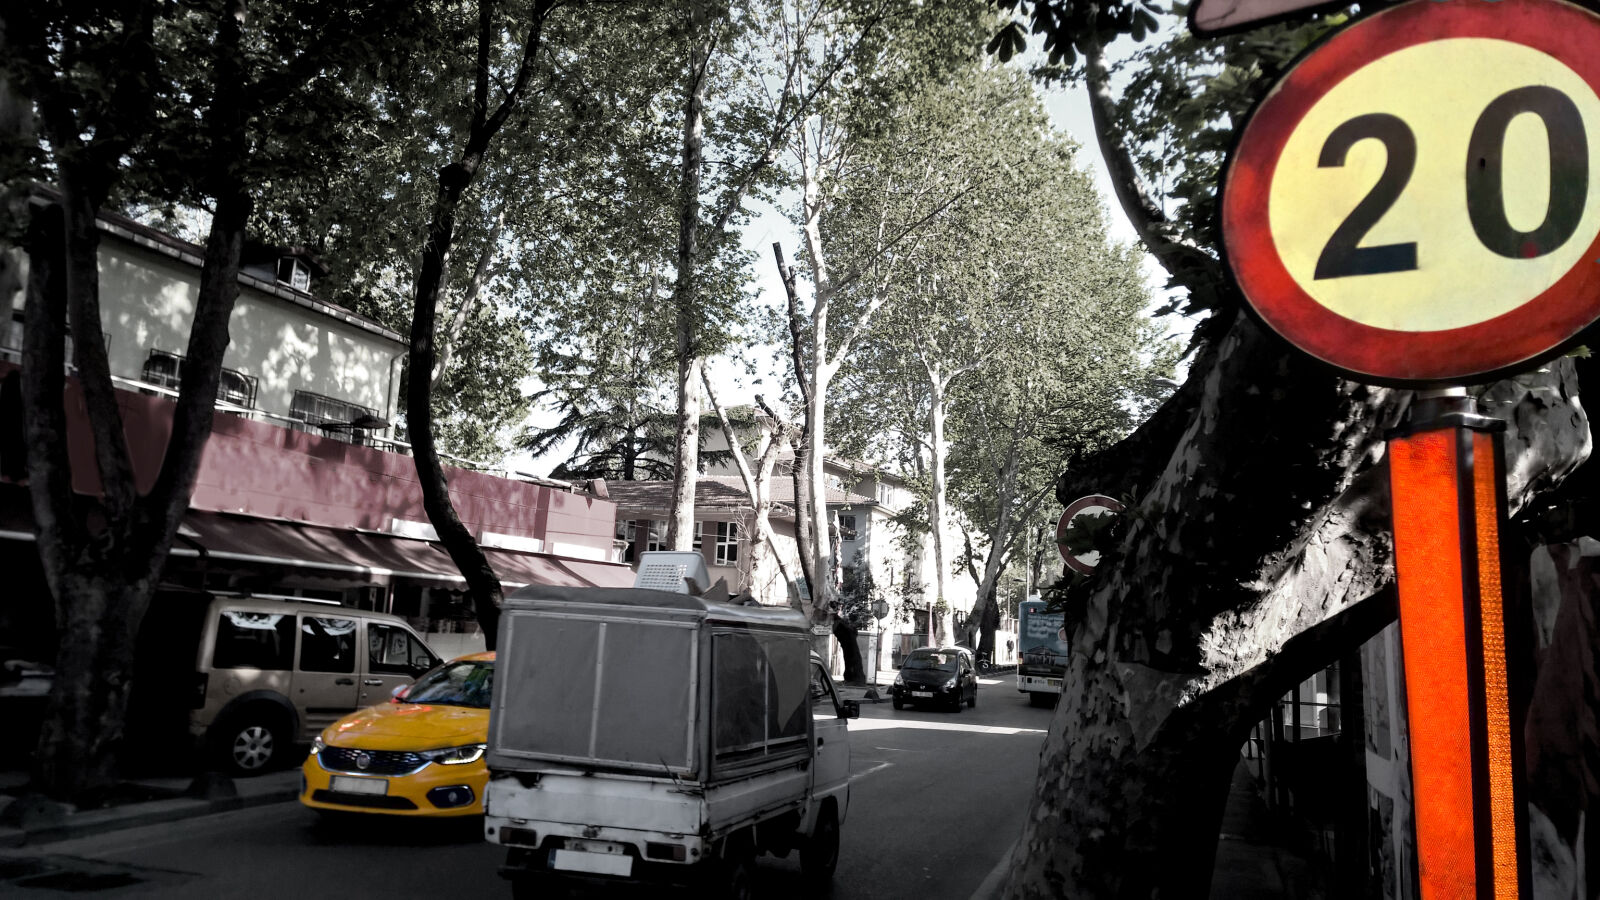 Nokia Lumia 1520 sample photo. City, road, street, tree photography